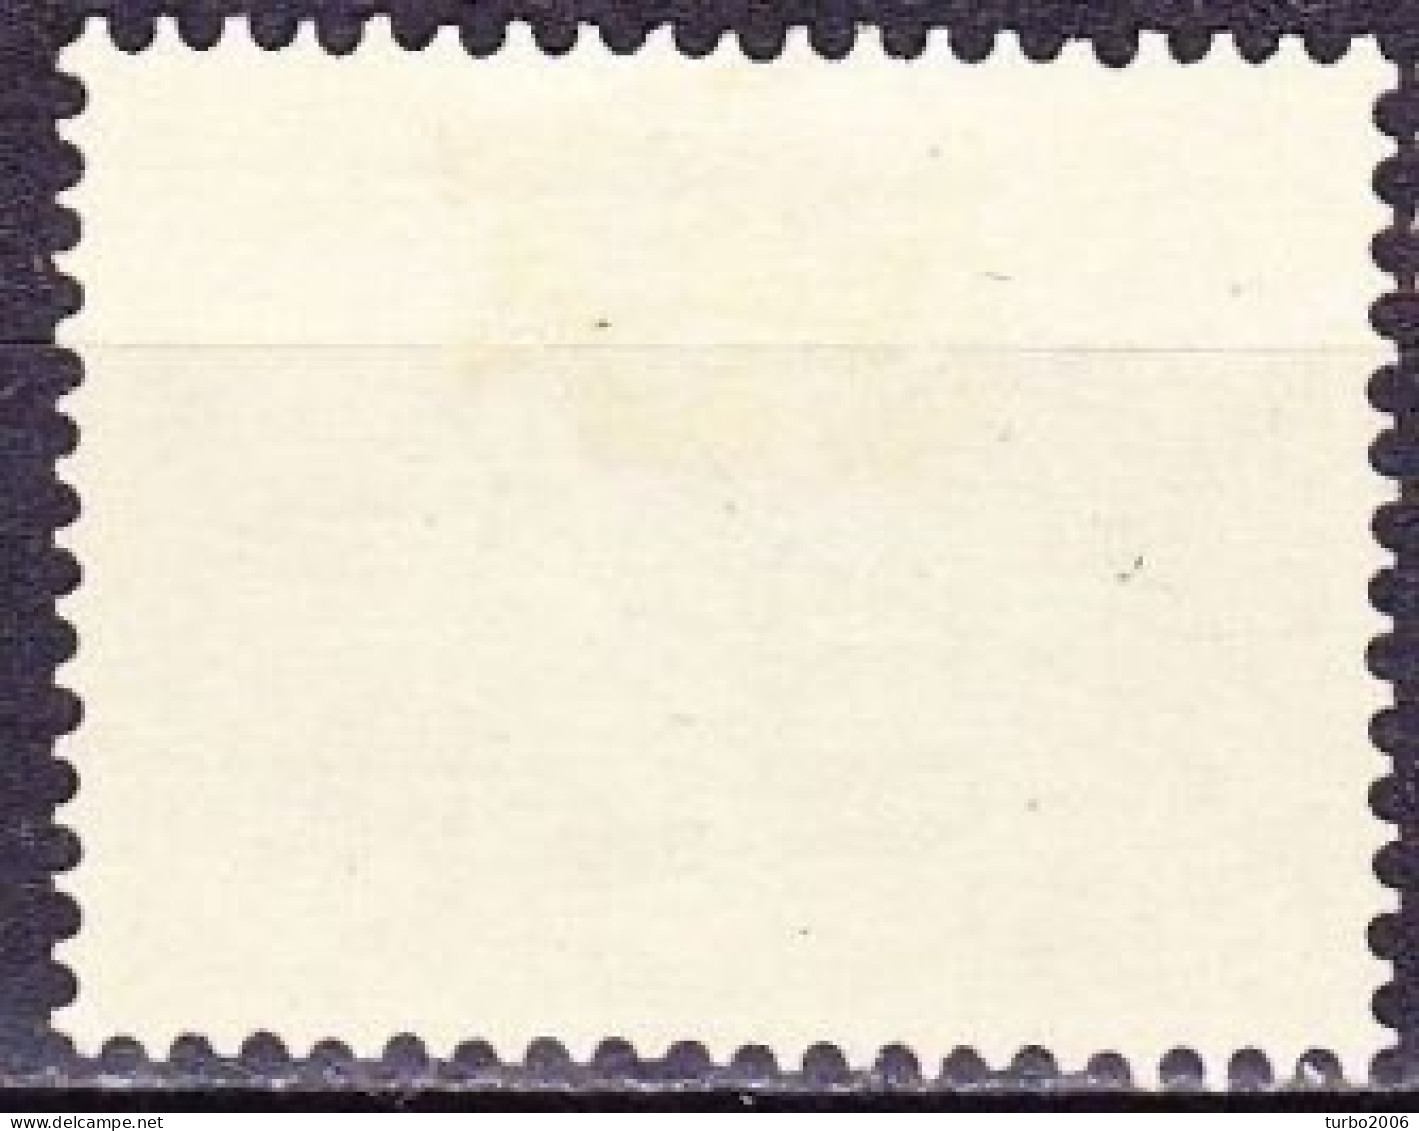 Plaatfout Lichte Vlek Midden Onder De 2 In 1952 Kinderzegels 2 + 3 Ct Groen NVPH 596 PM 1 Ongestempeld - Plaatfouten En Curiosa